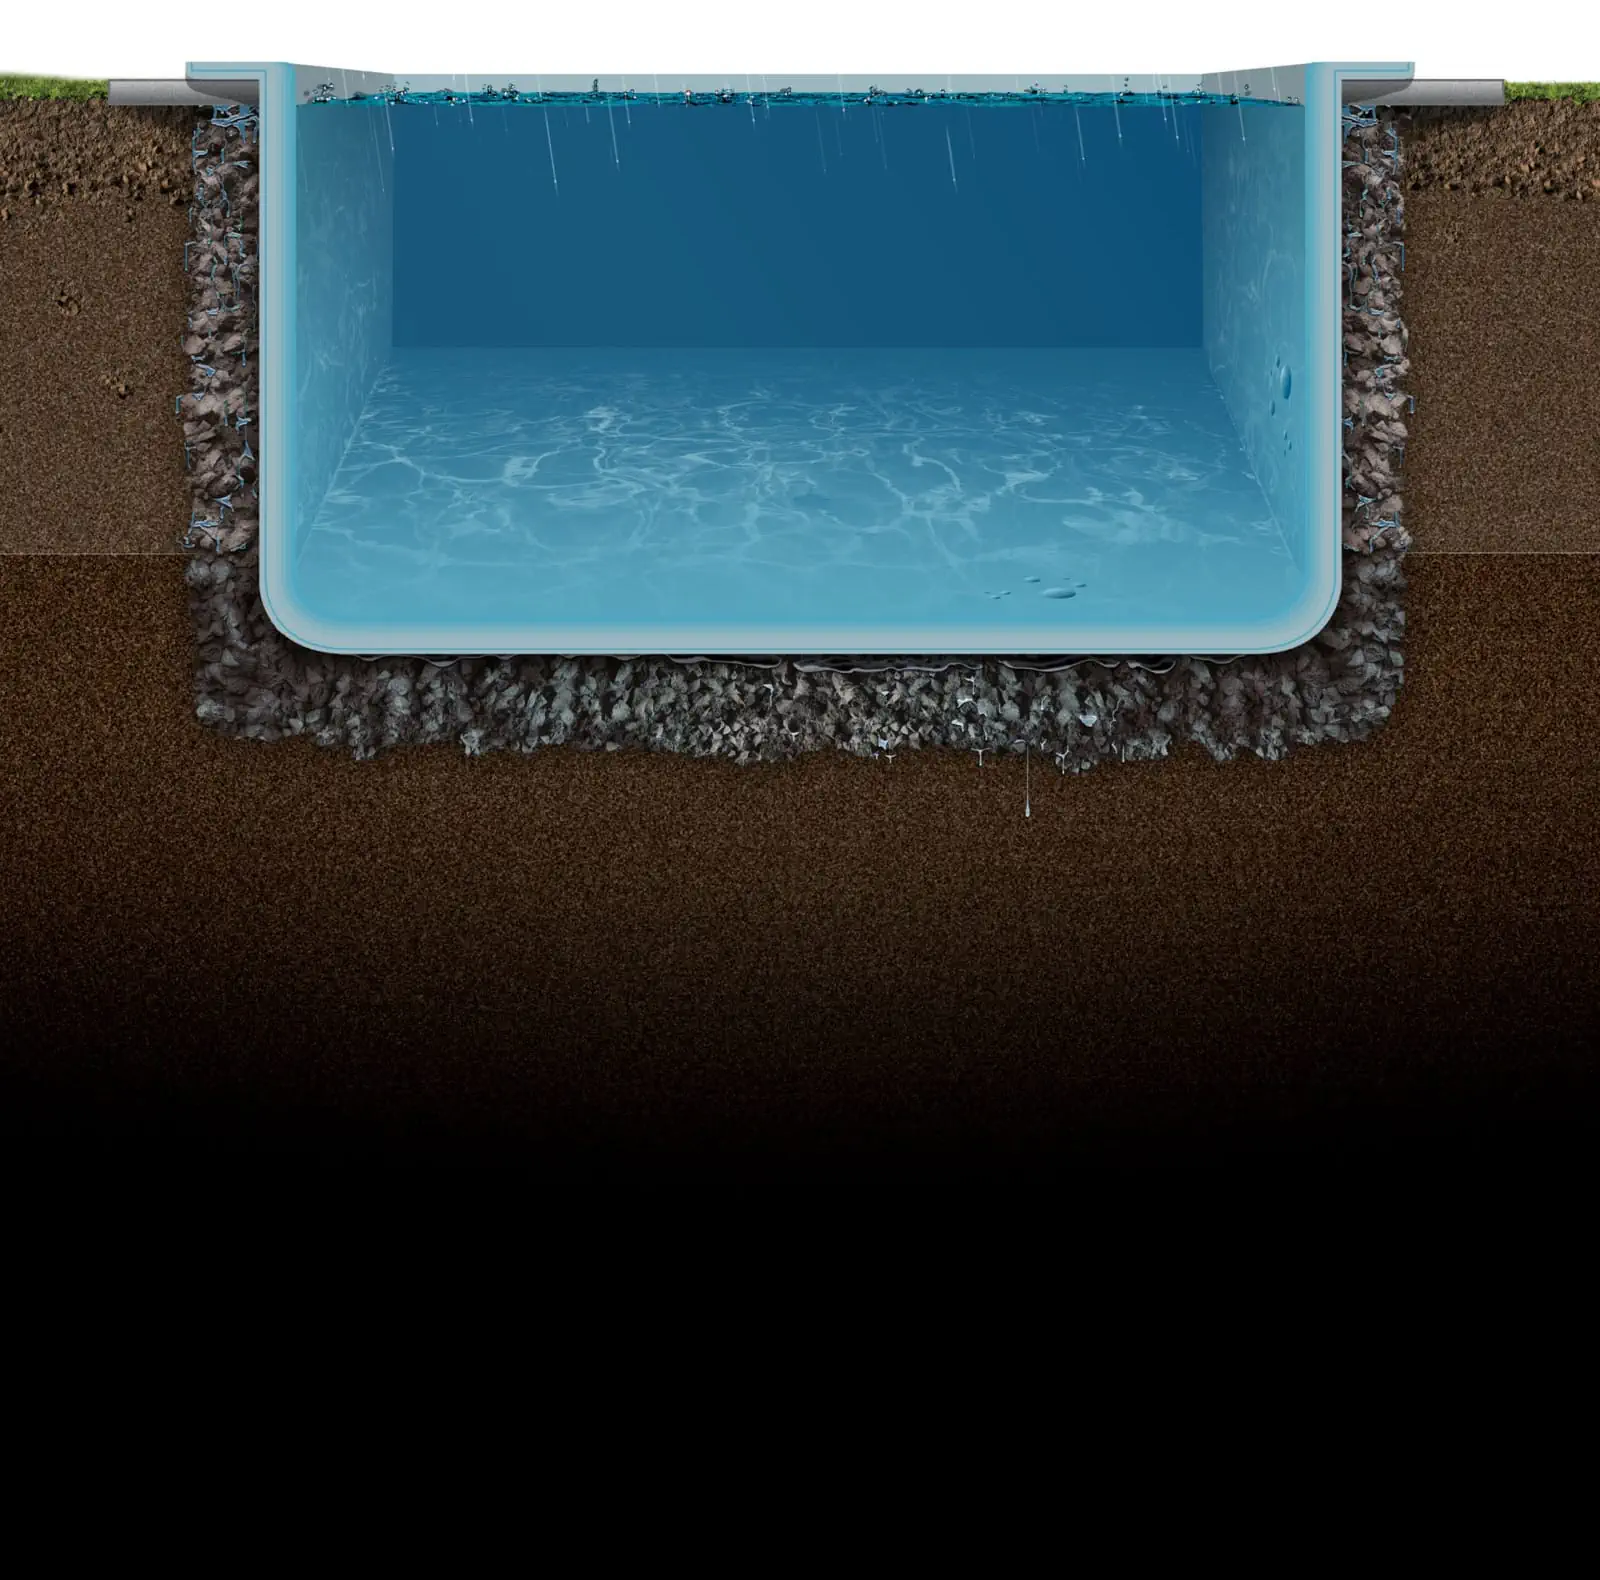 Protezione delle piscine dall'osmosi